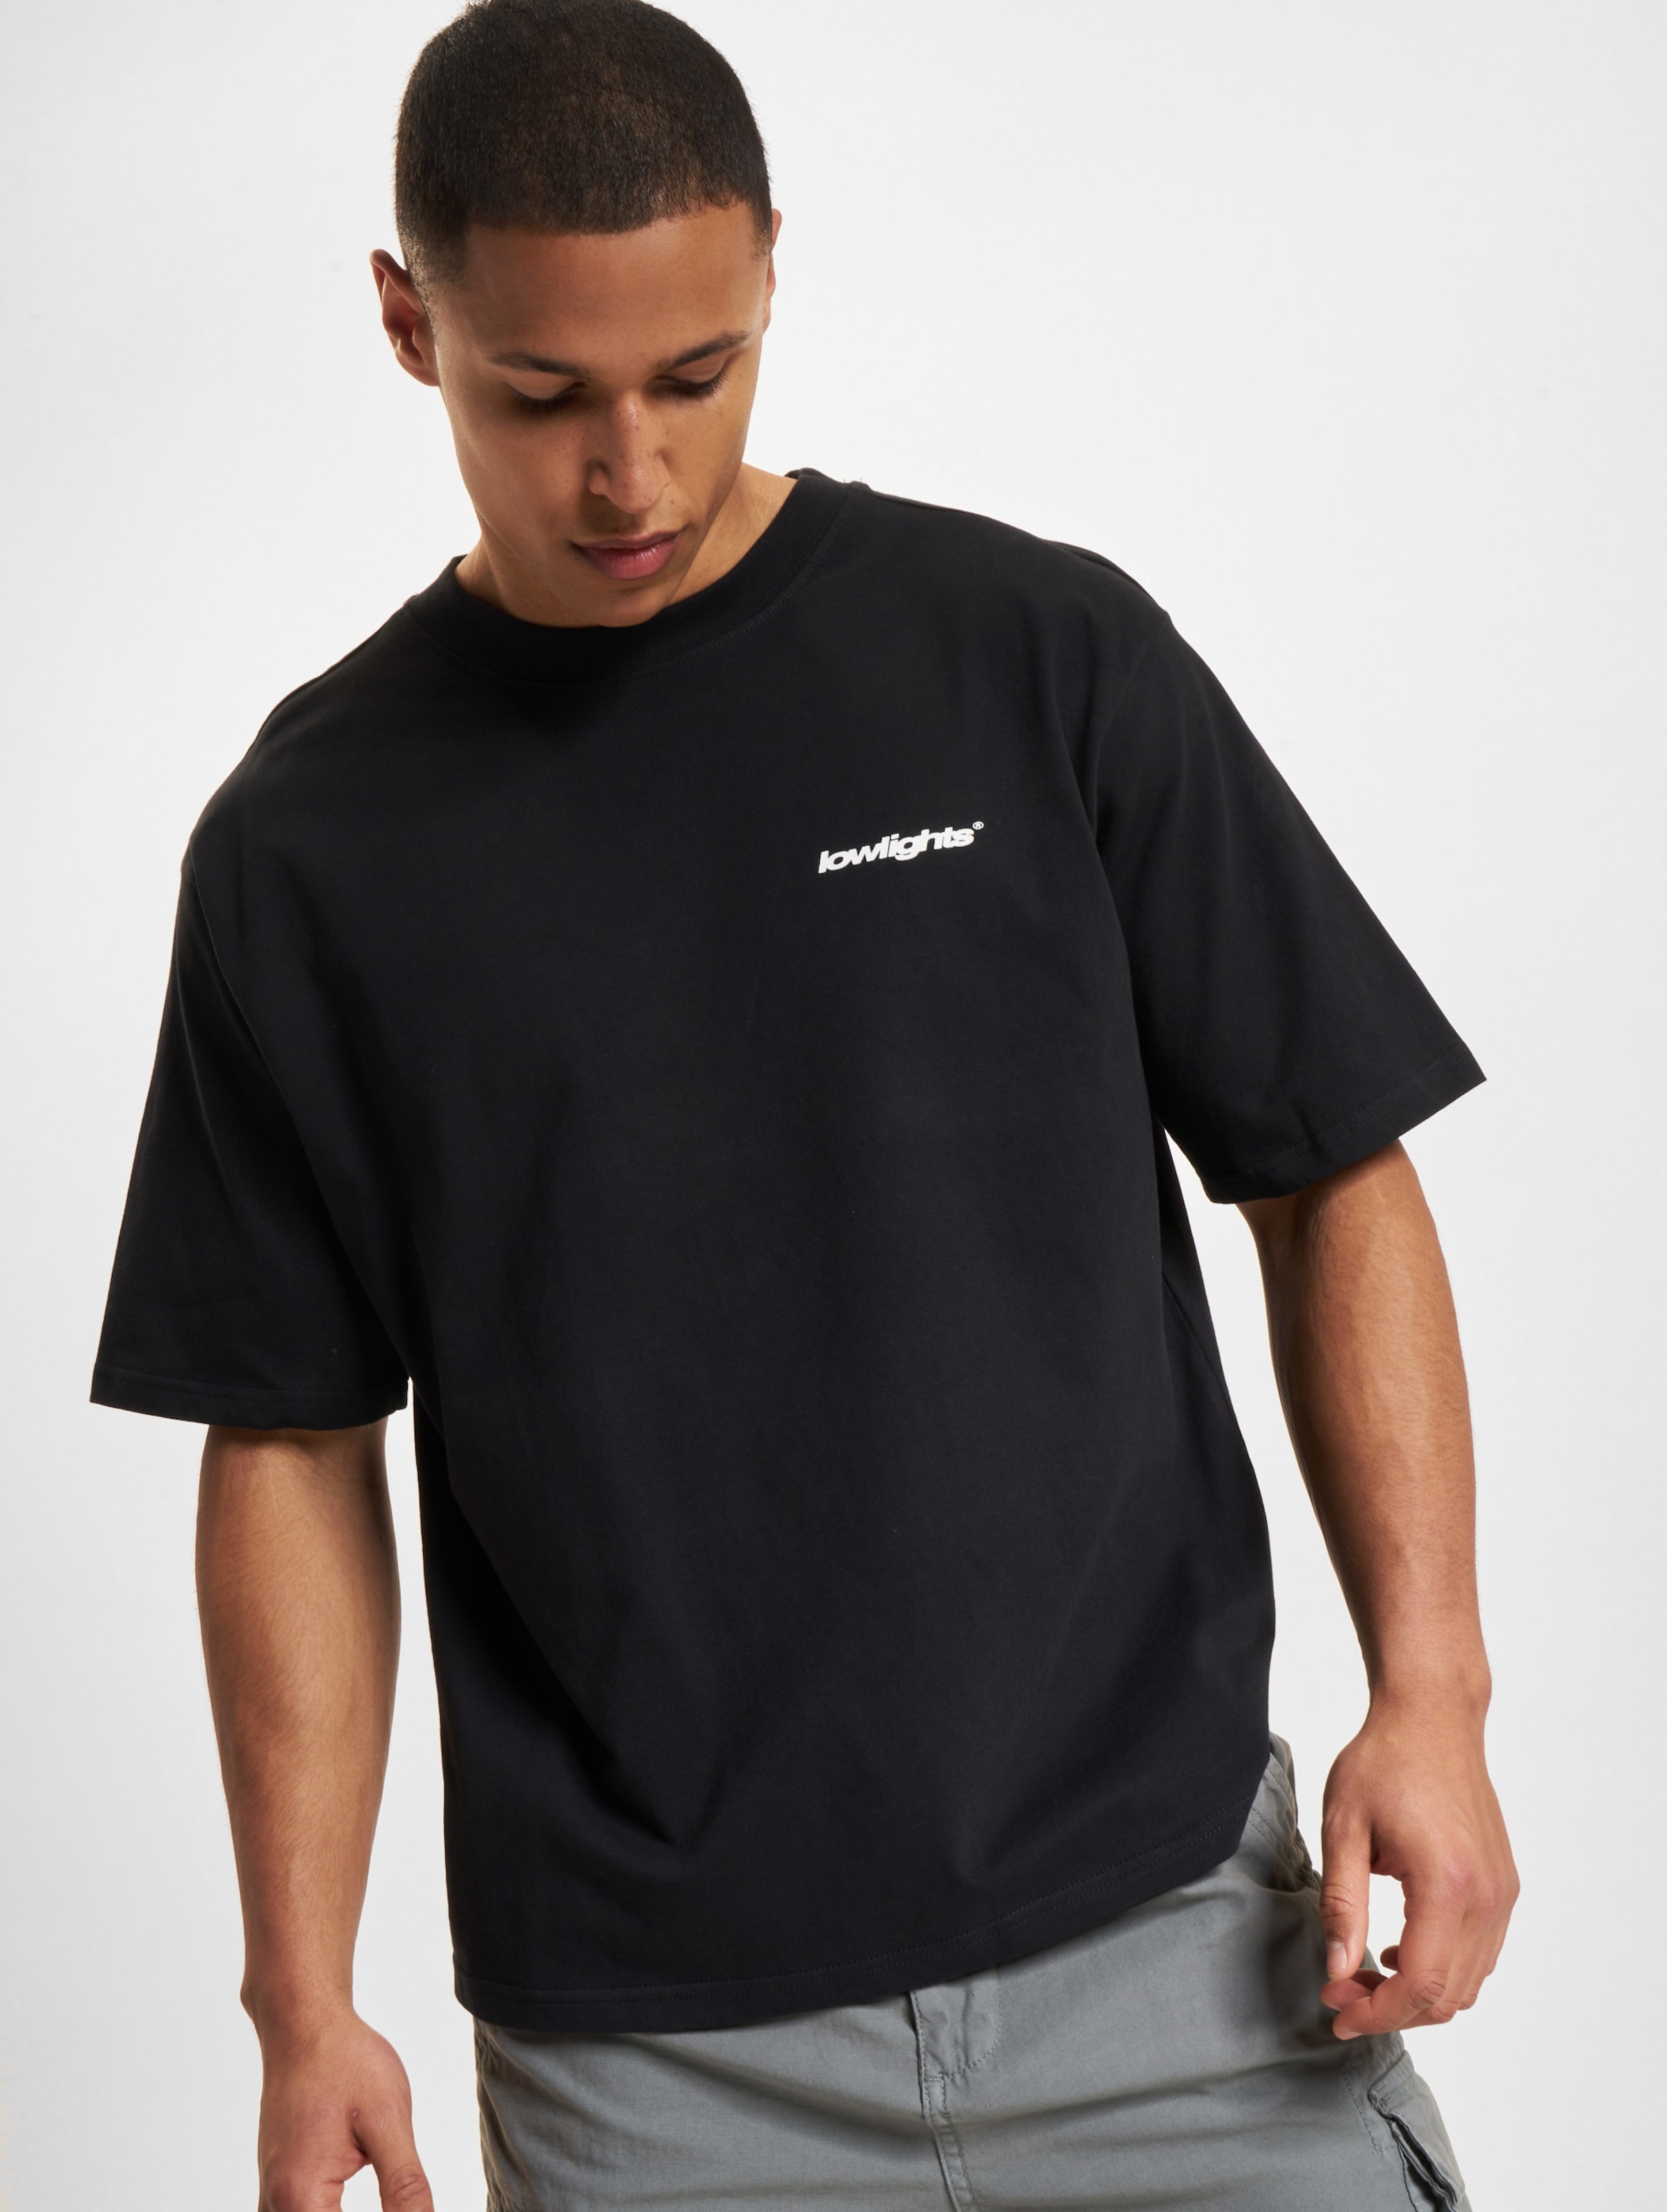 Low Lights Studios Basic T-Shirt black Männer,Unisex op kleur zwart, Maat XL